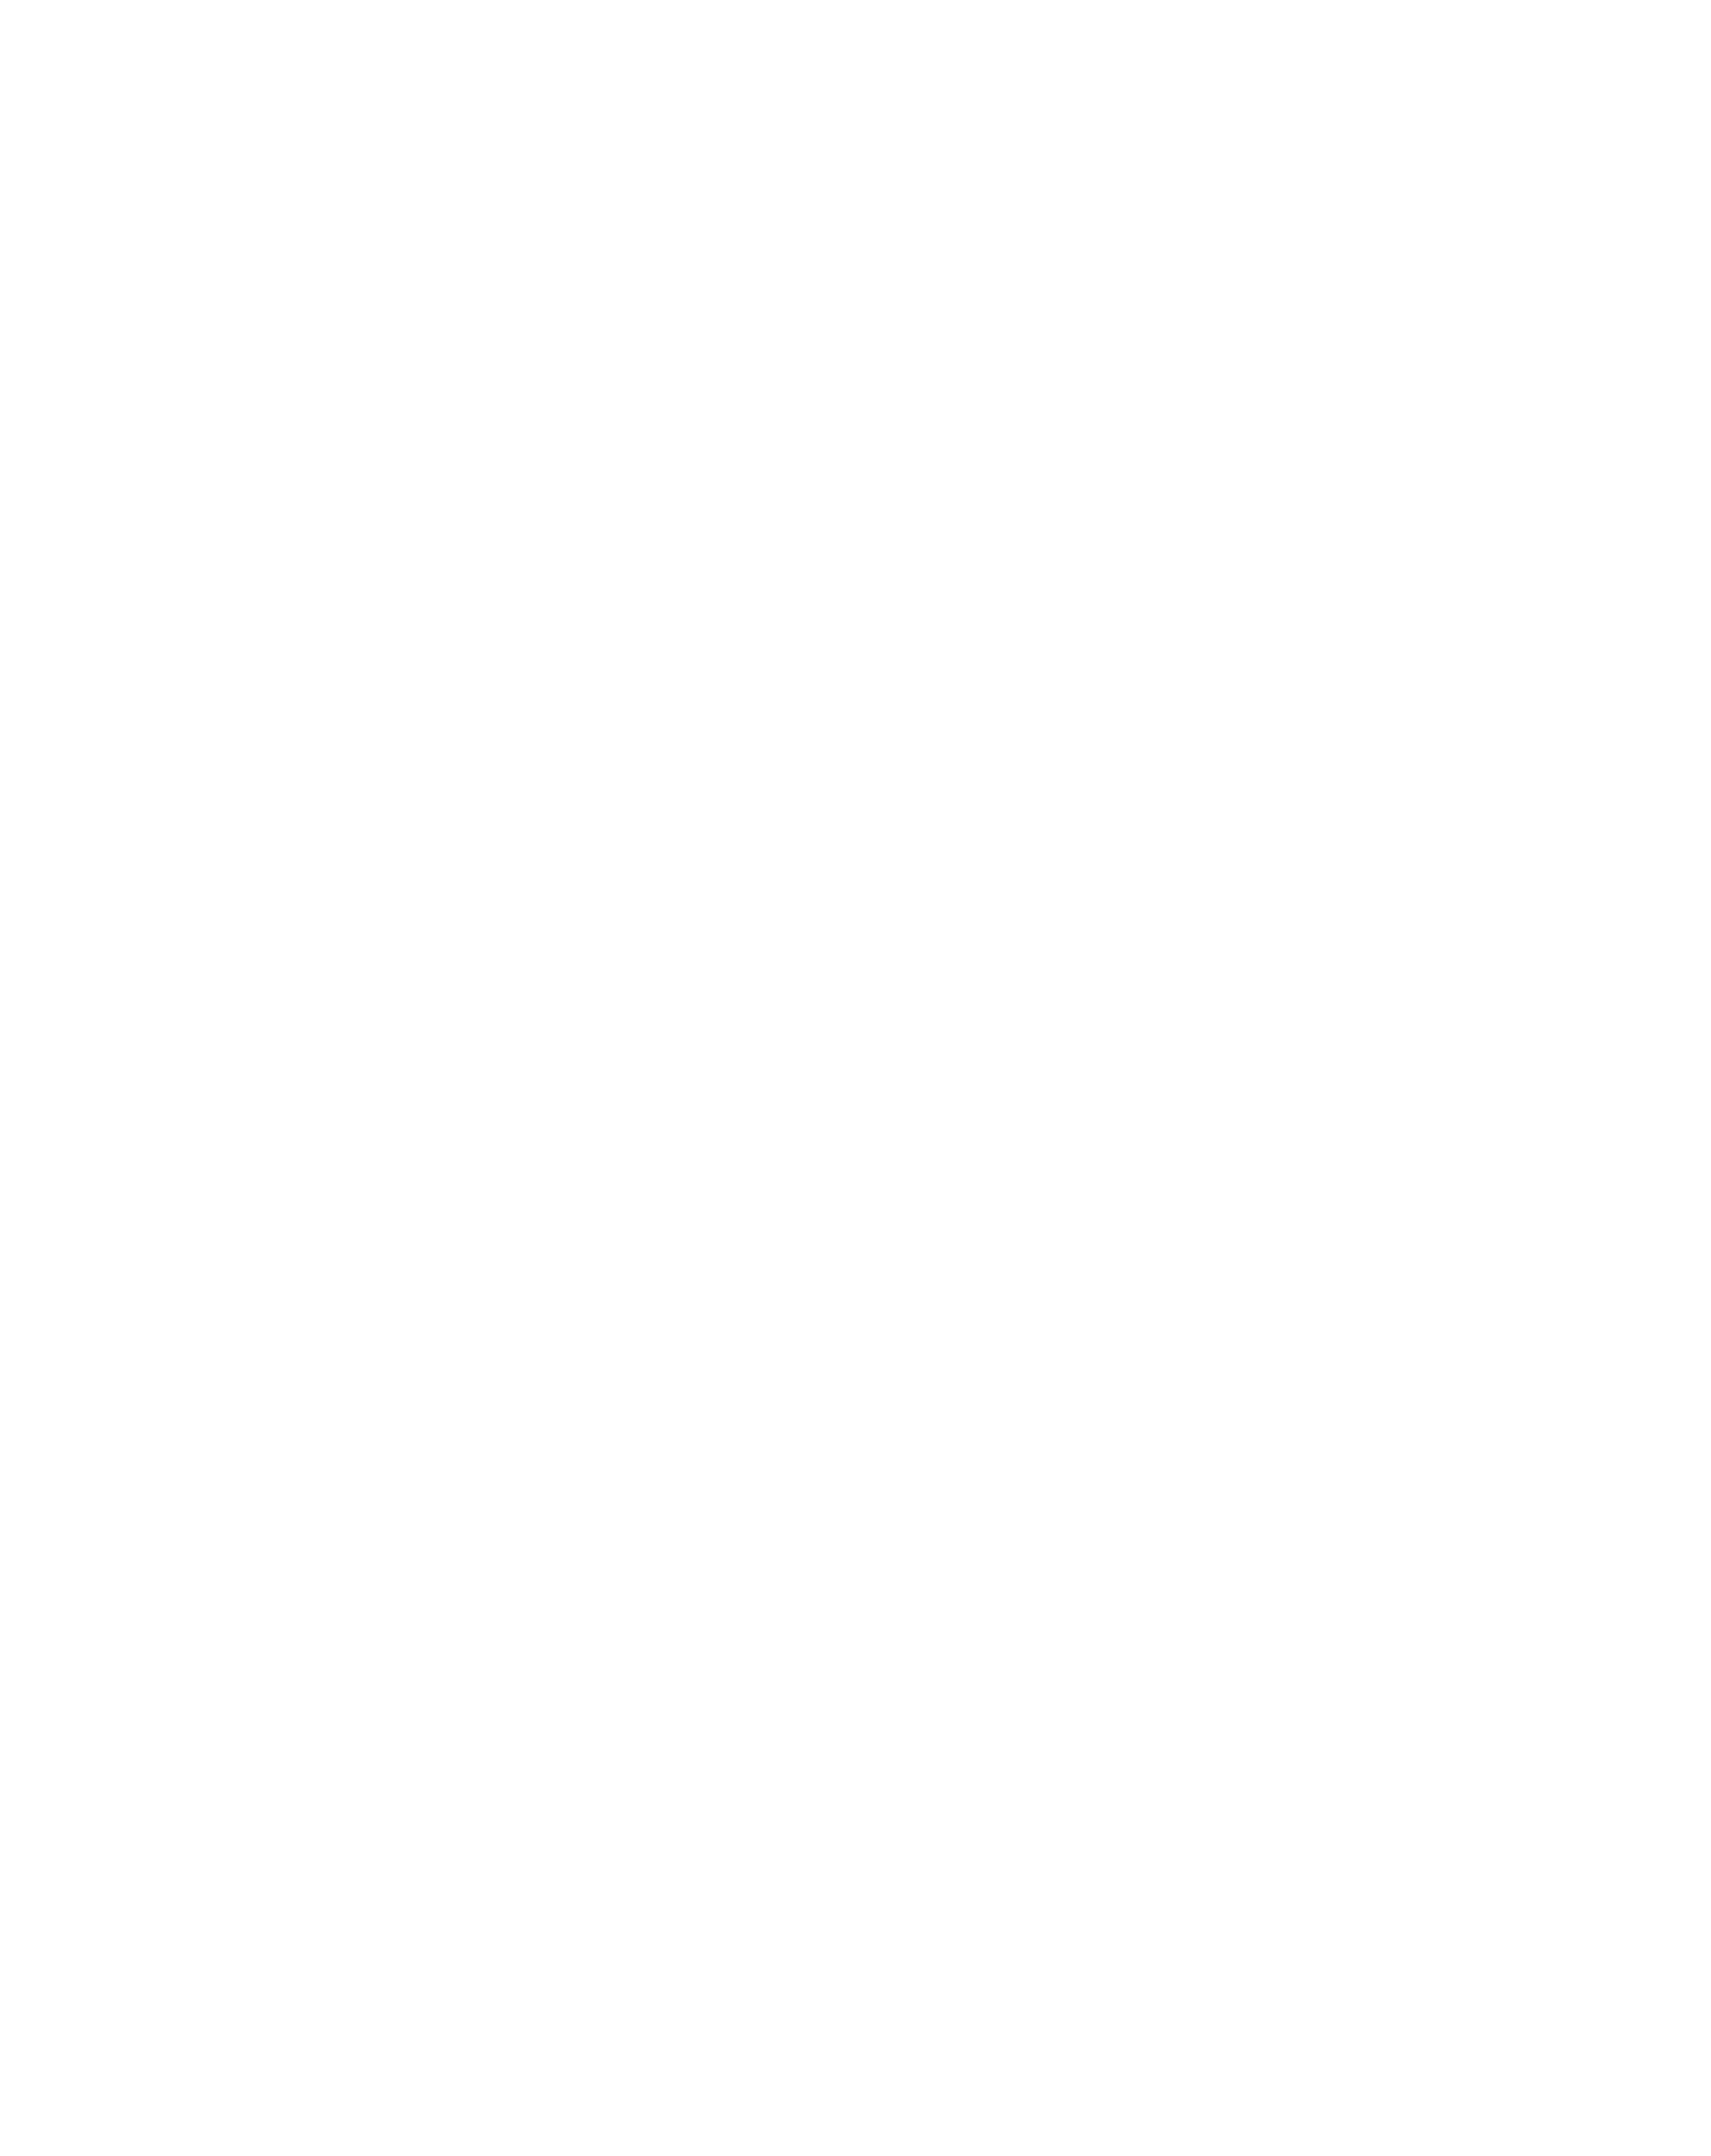 Centurio